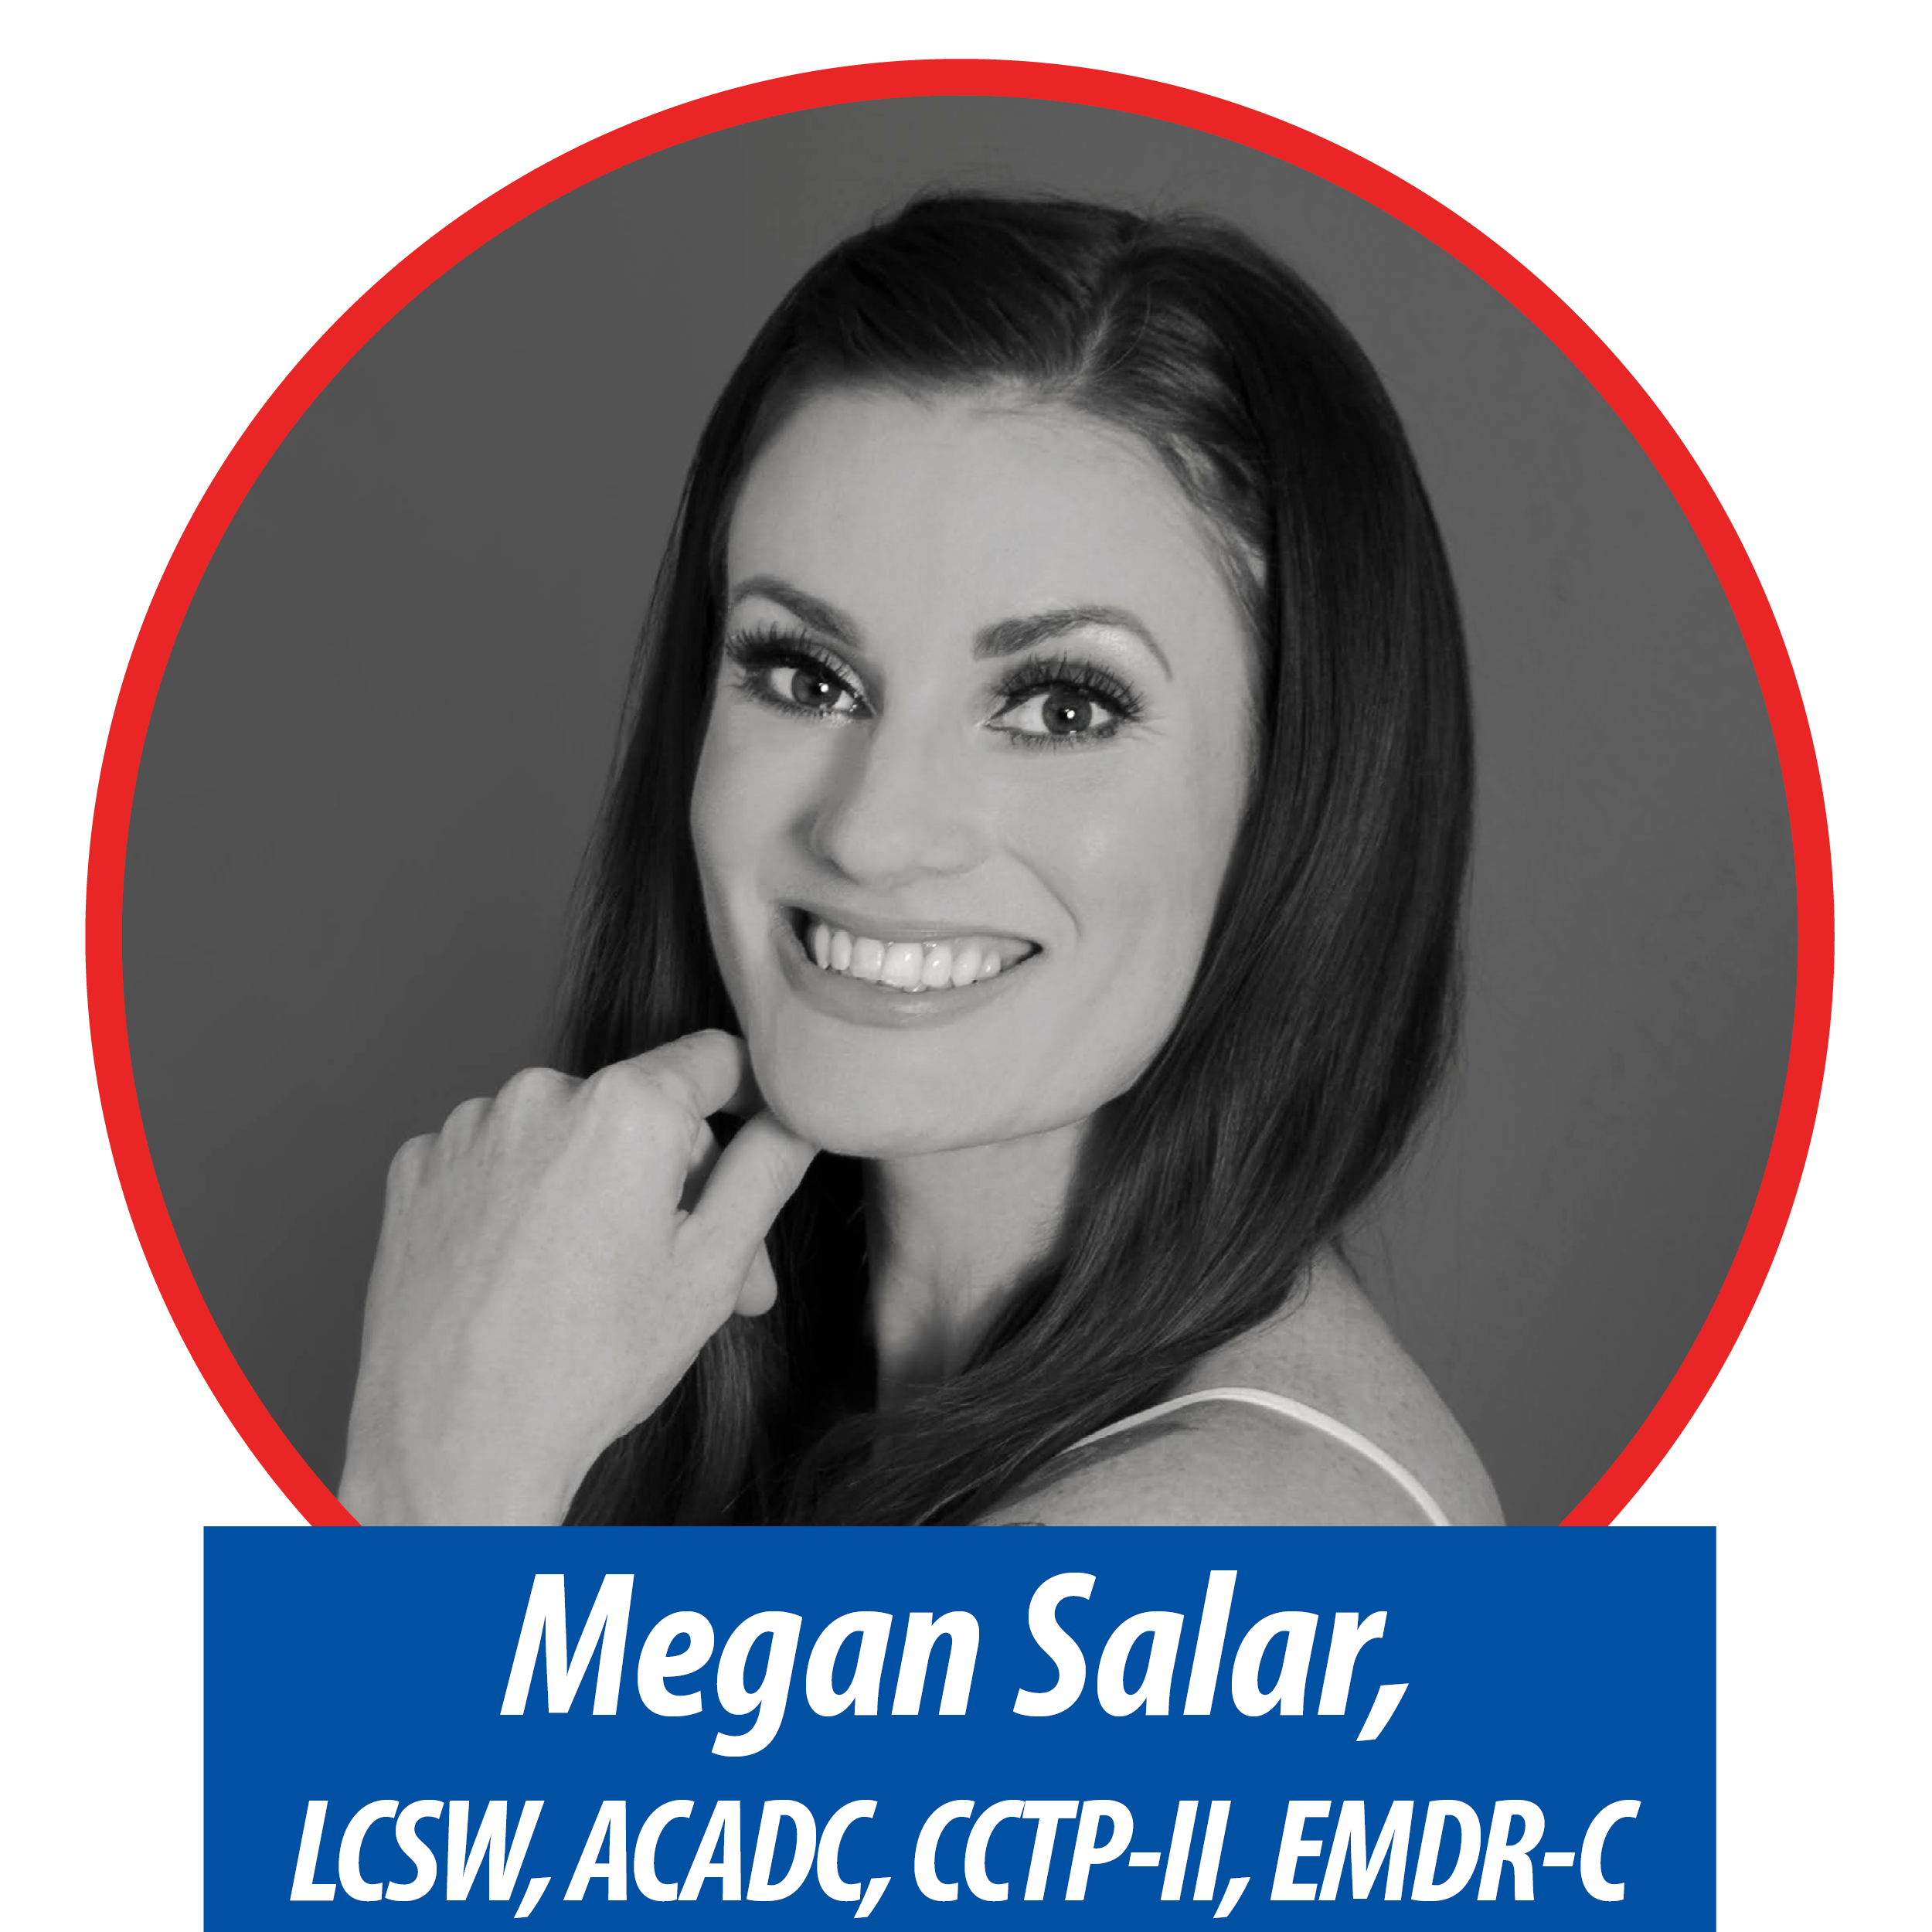 Megan Boardman, LCSW, ACADC, EMDR-C